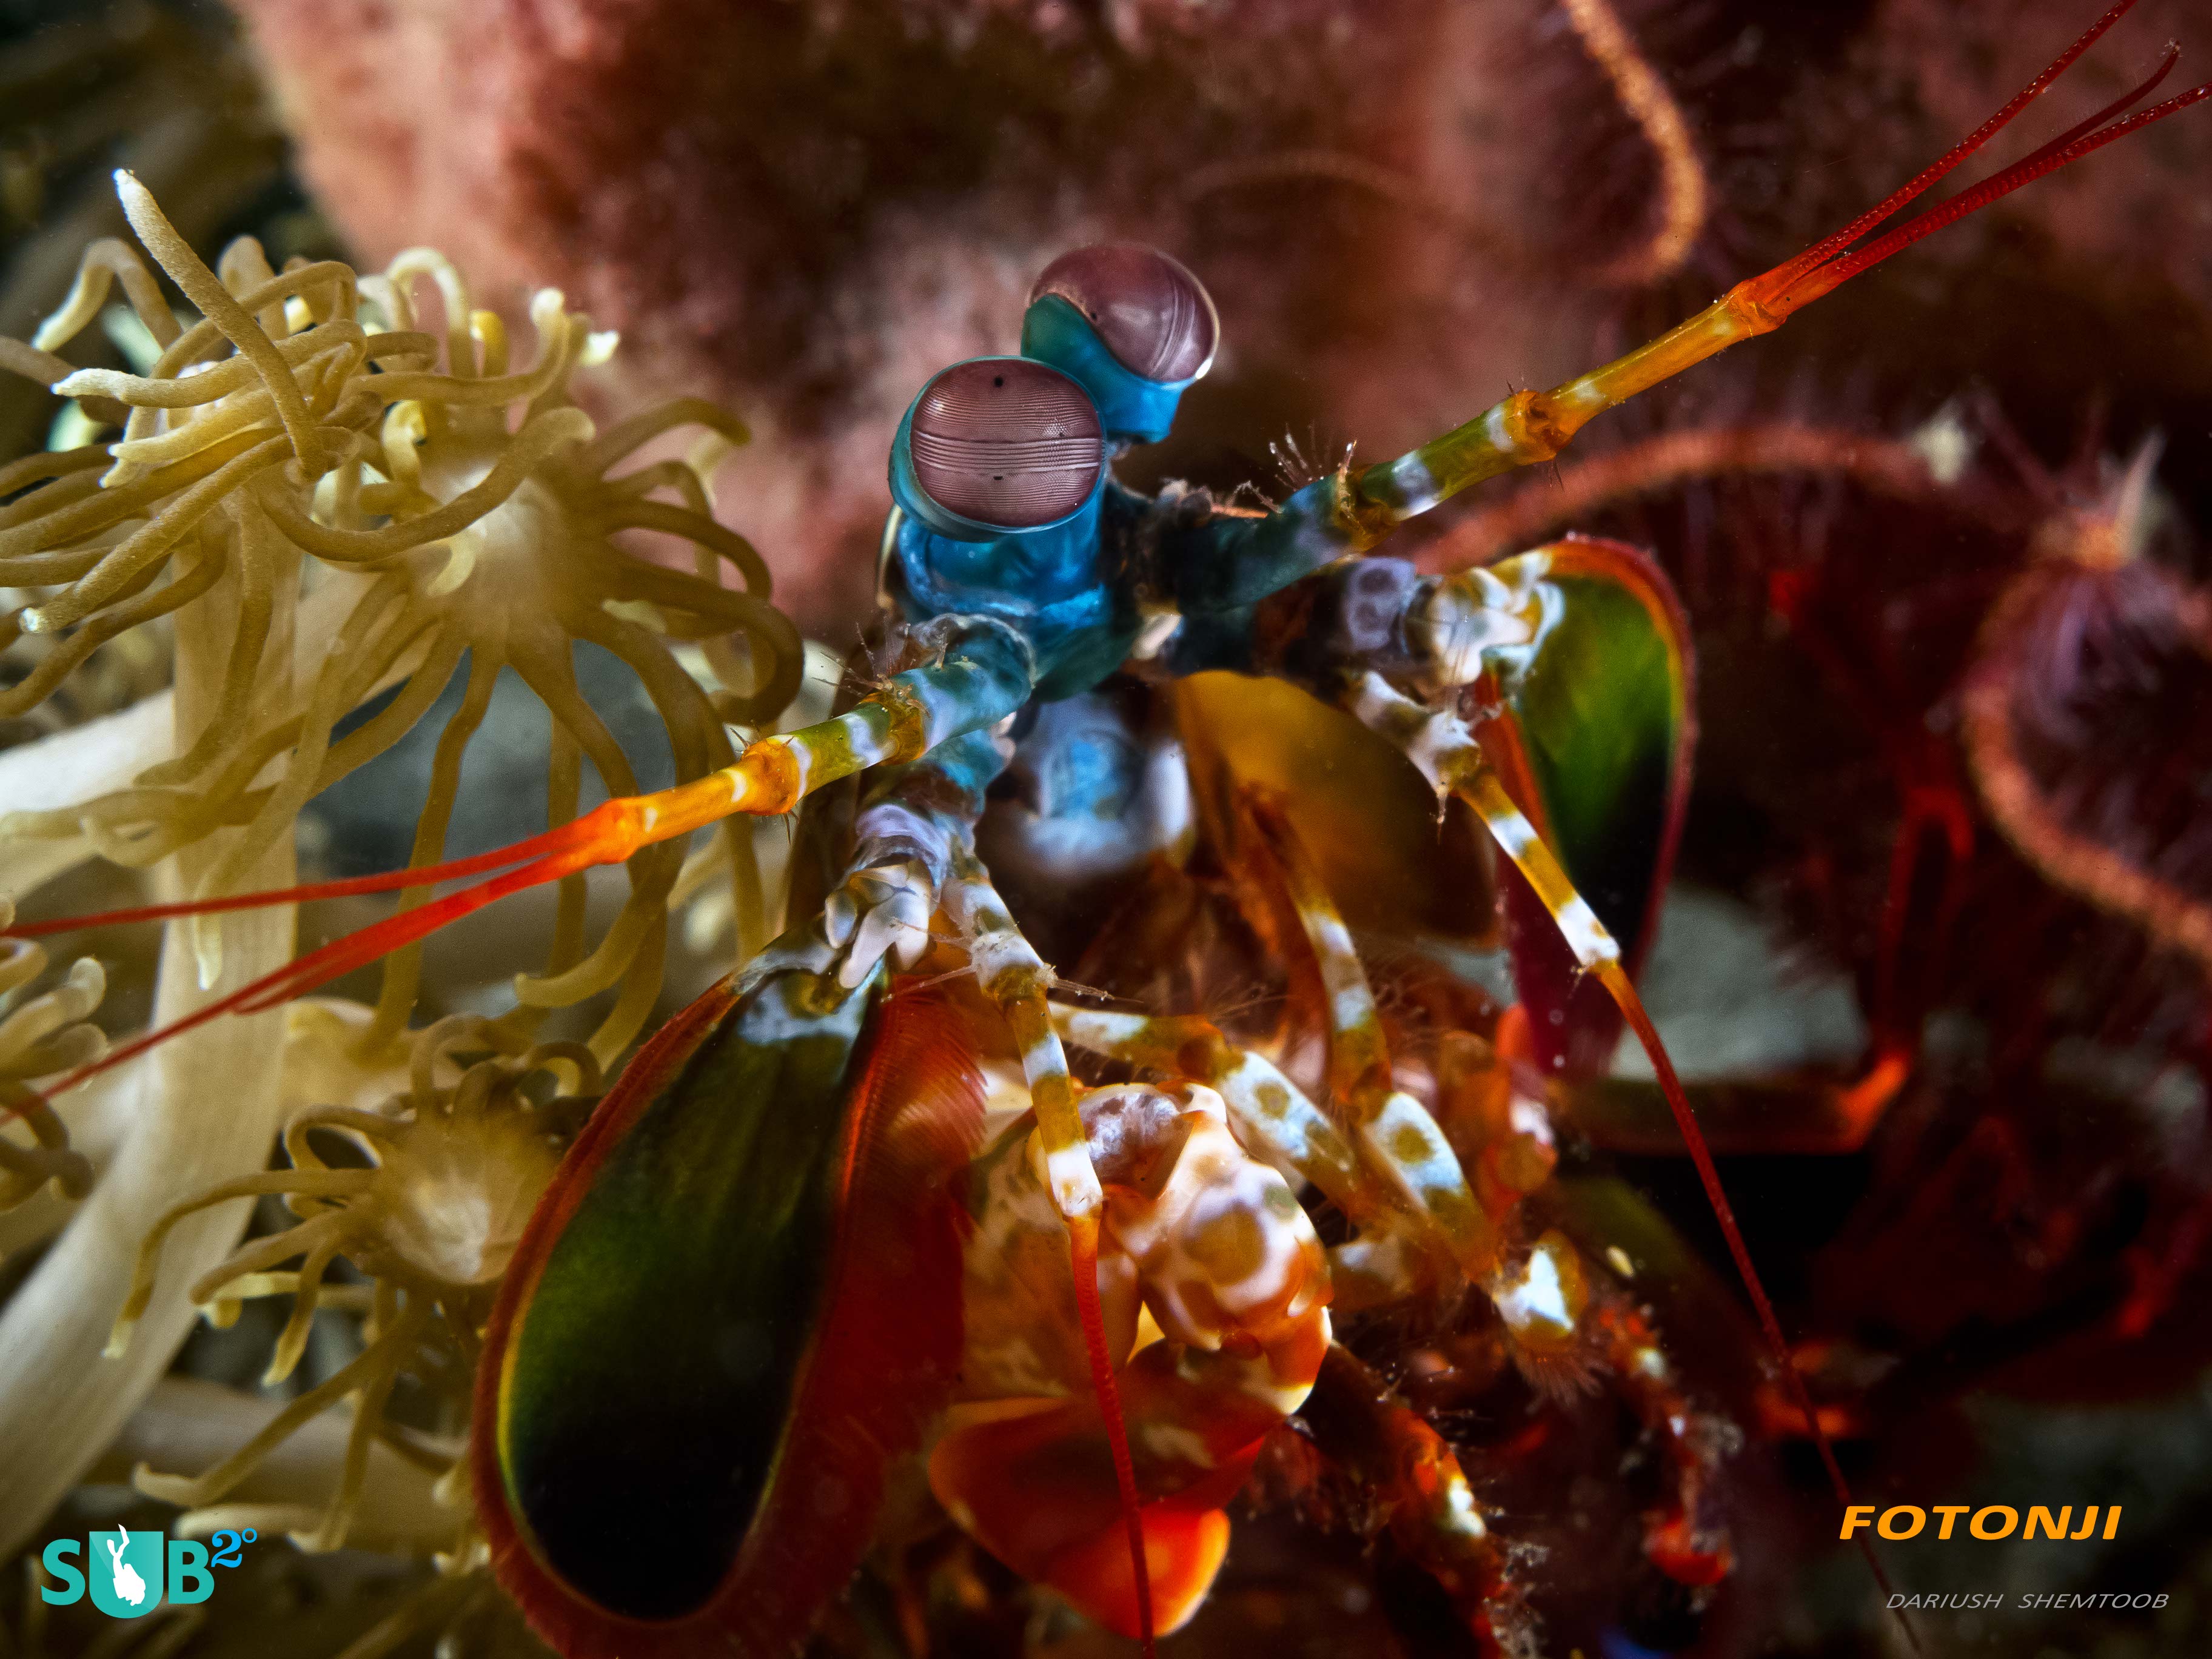 螳螂虾自豪地保持着水下最快机械运动的记录。